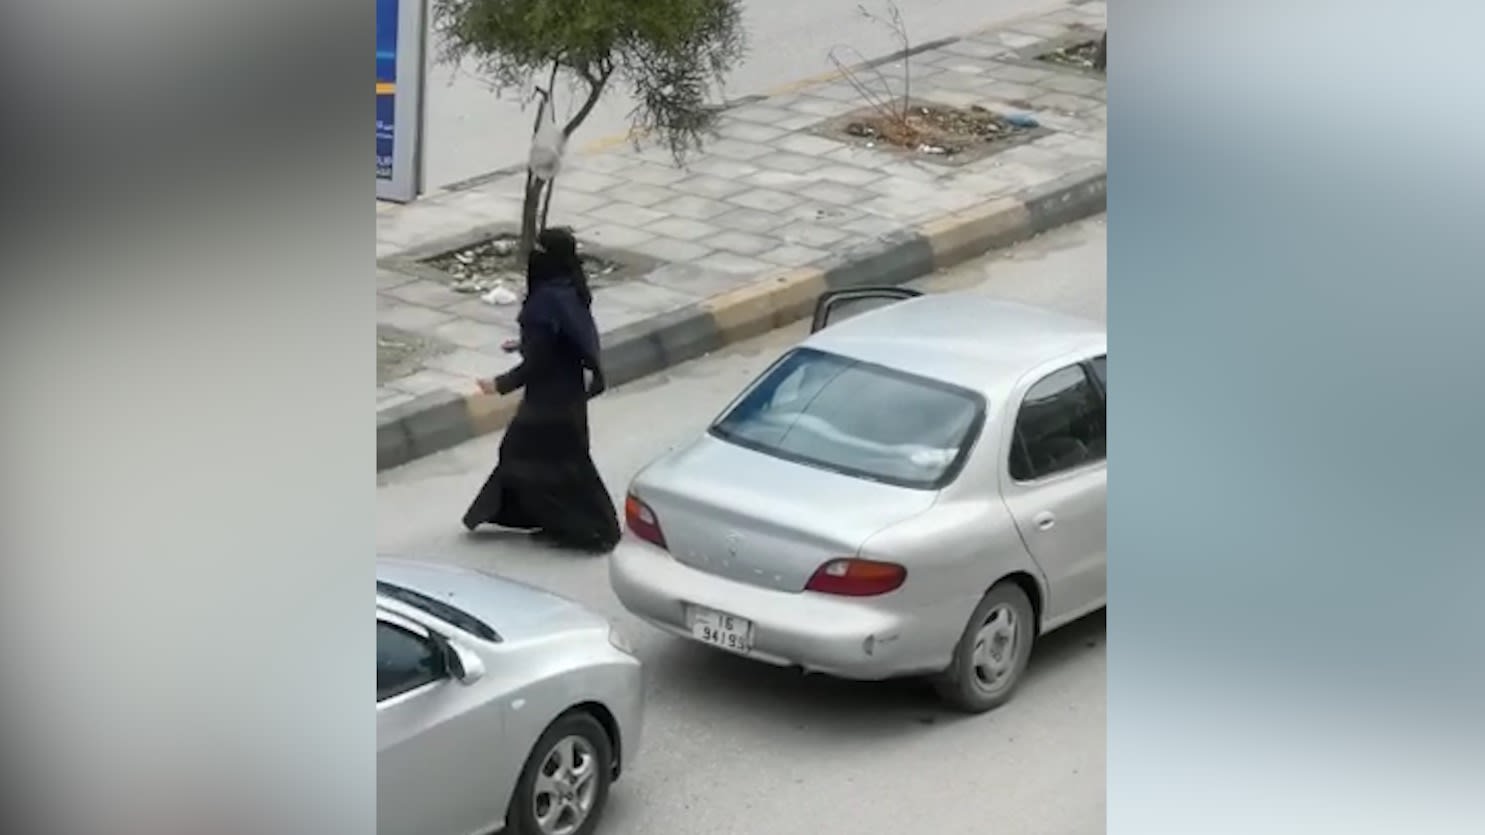 في ظل حظر التجول بالأردن بسبب كورونا.. فتاة "ترقص" في الطريق والأمن يلقي القبض عليها